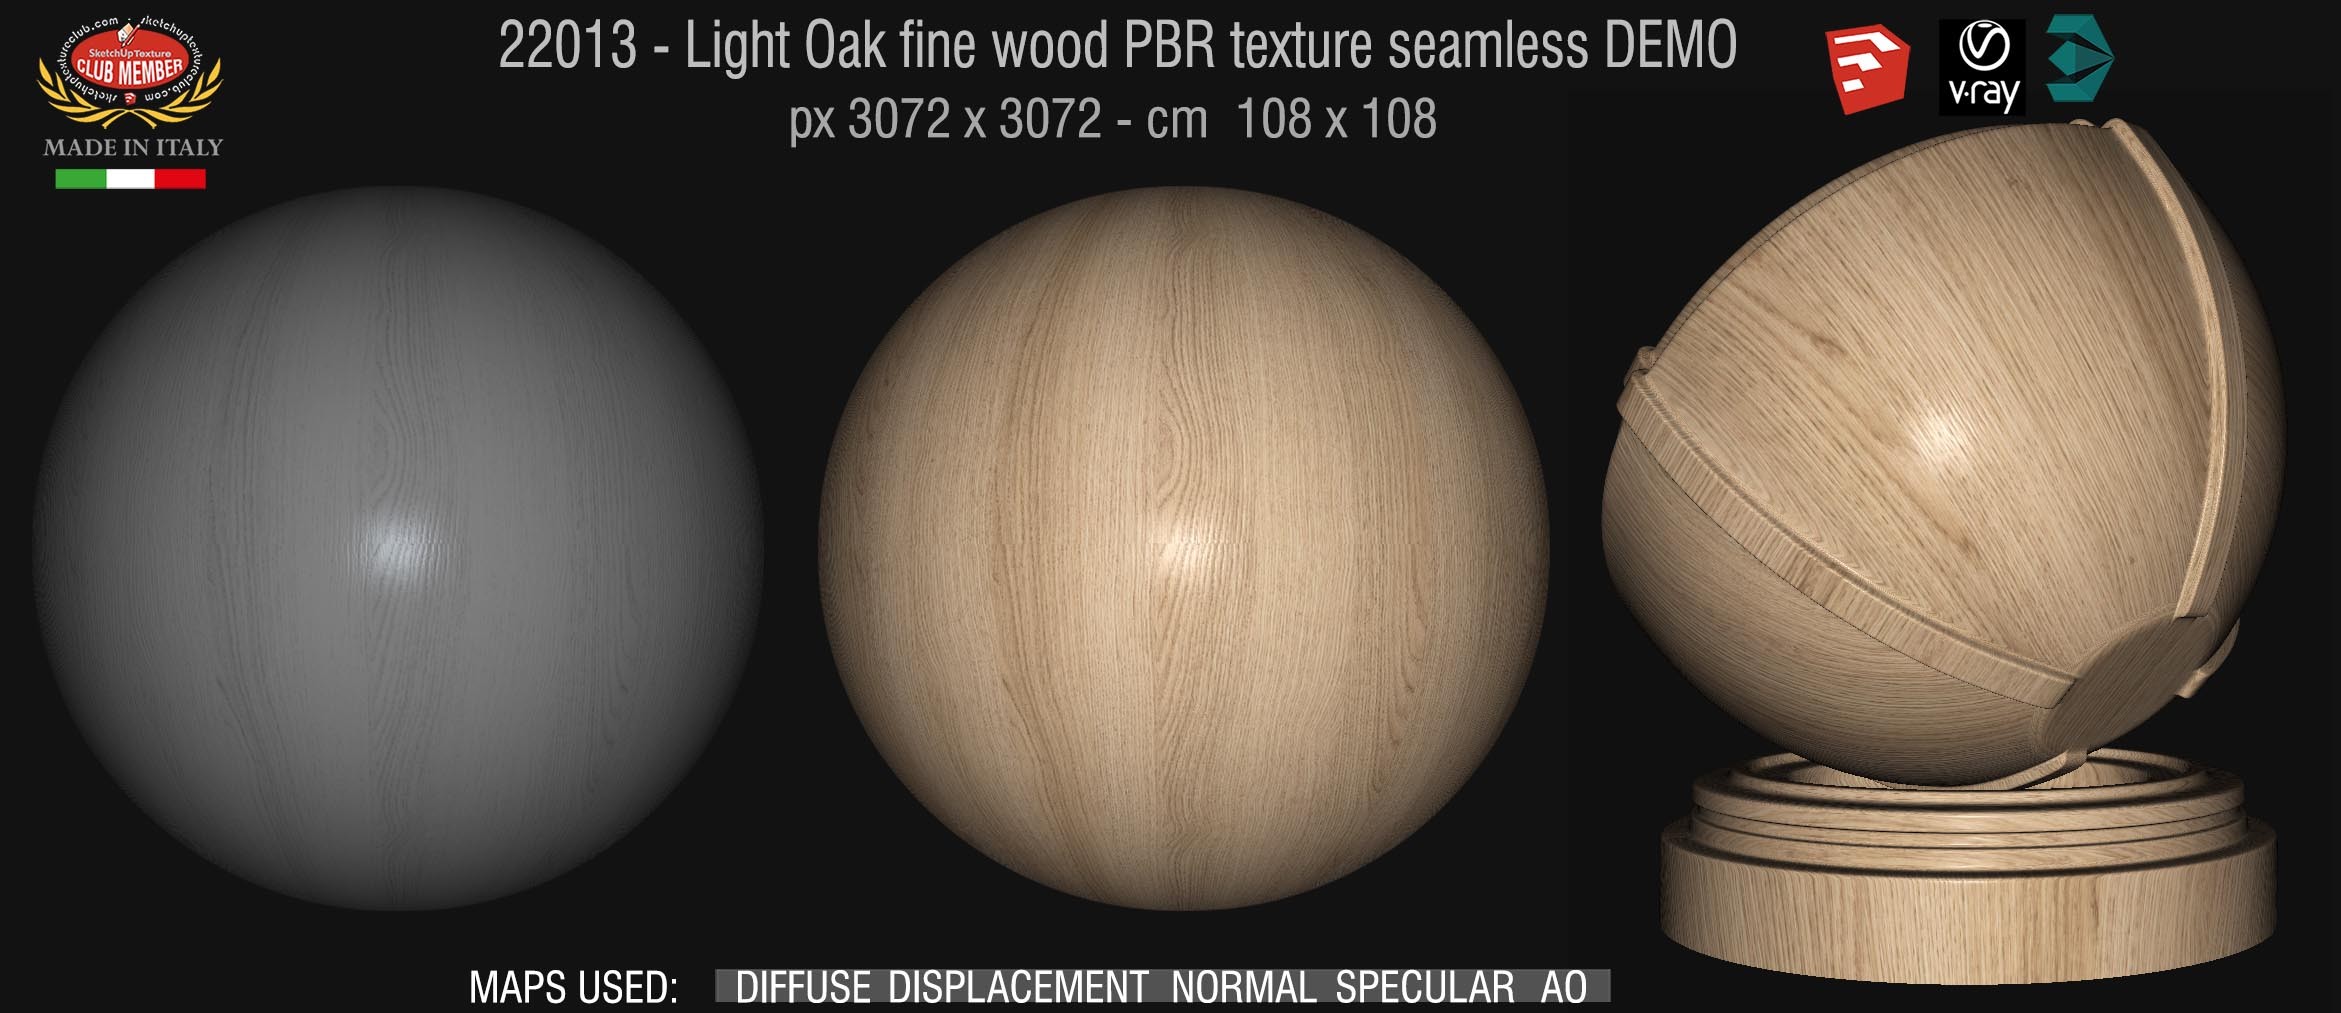 22013 Light Oak fine wood PBR texture seamless DEMO